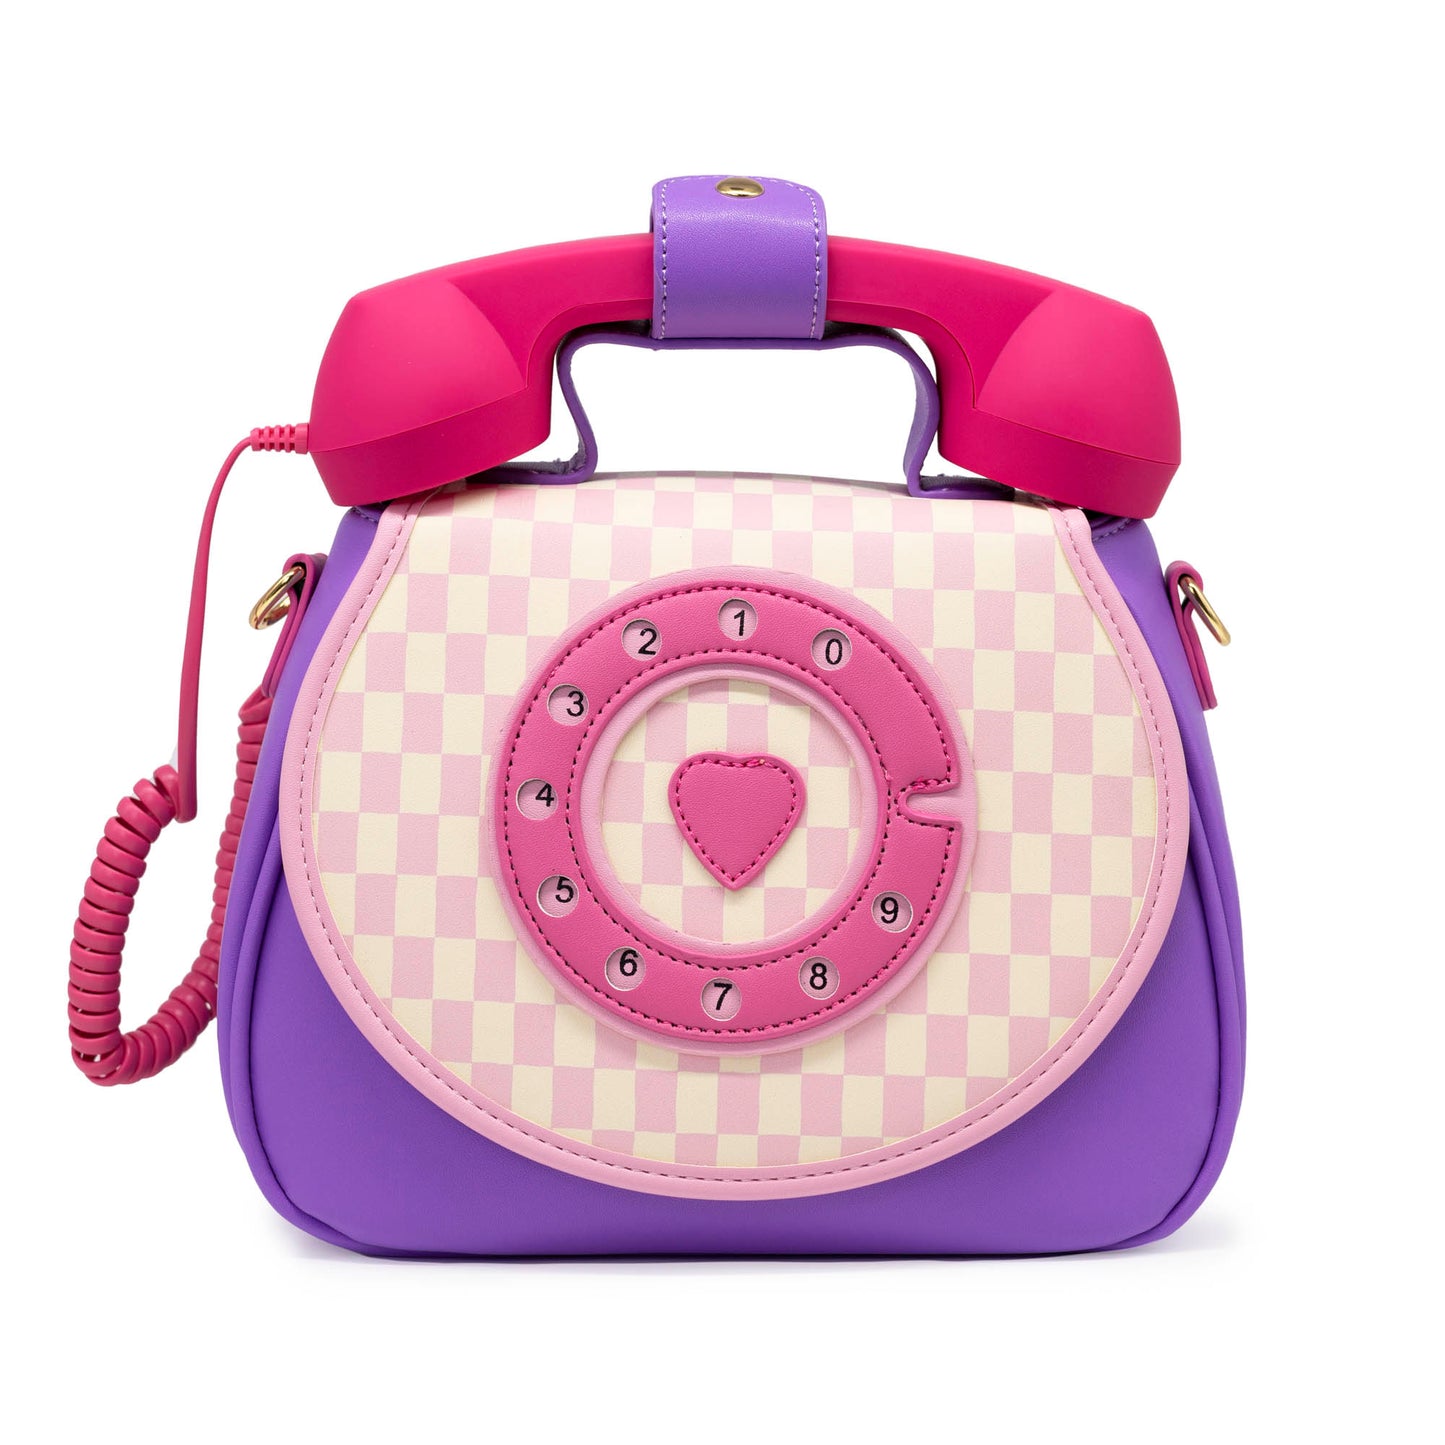 Ring Ring Phone Convertible Handbag - Pastel Checkerboard